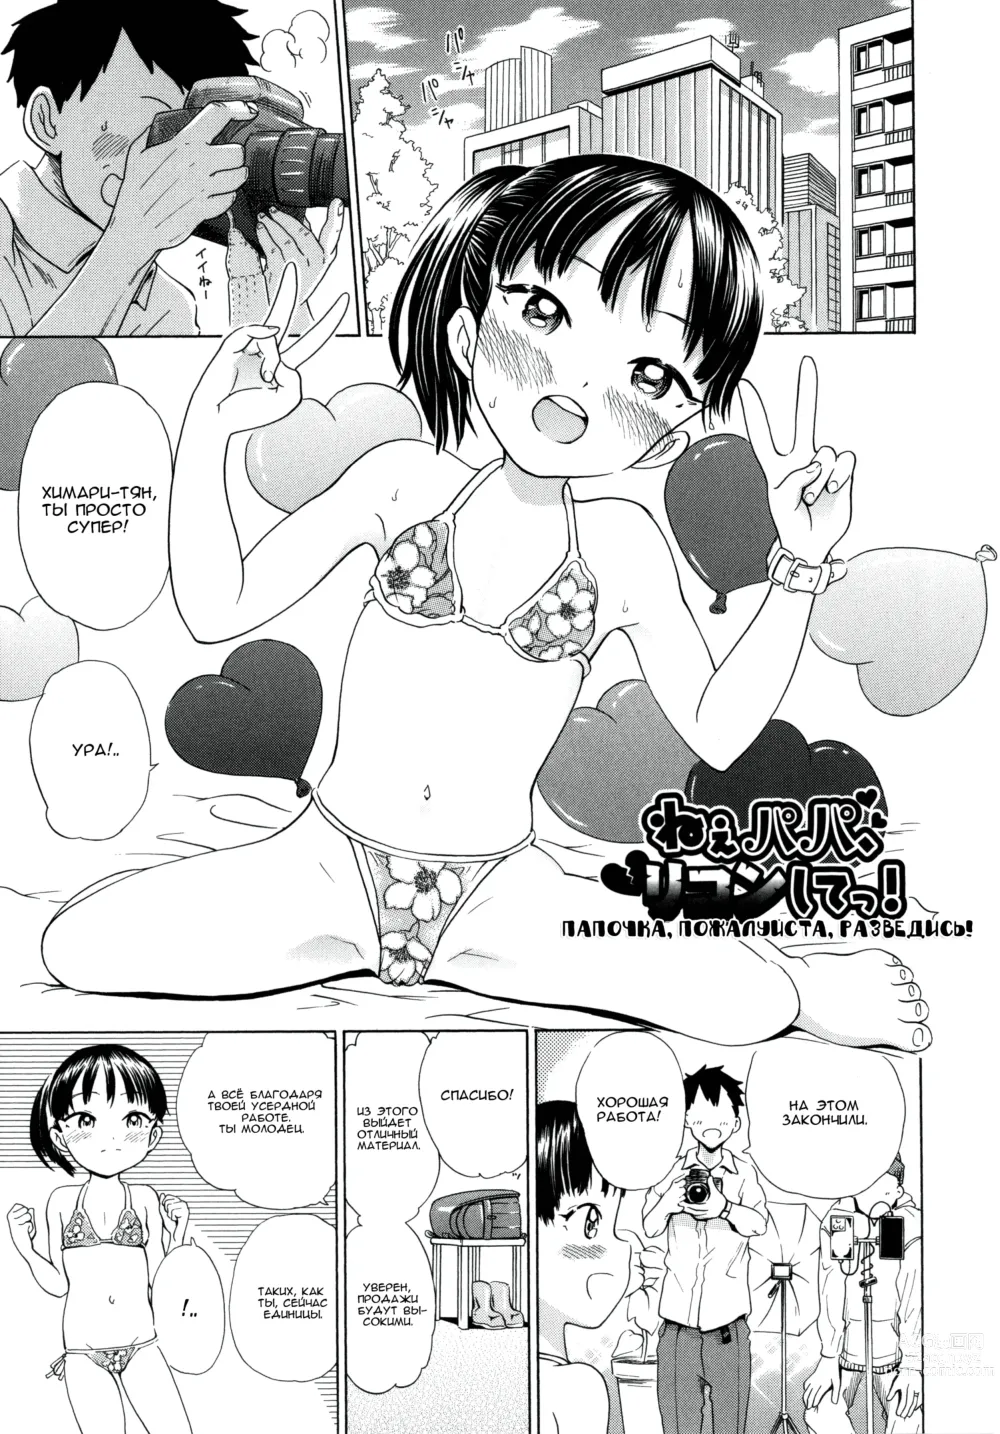 Page 1 of manga Папочка, пожалуйста, разведись!